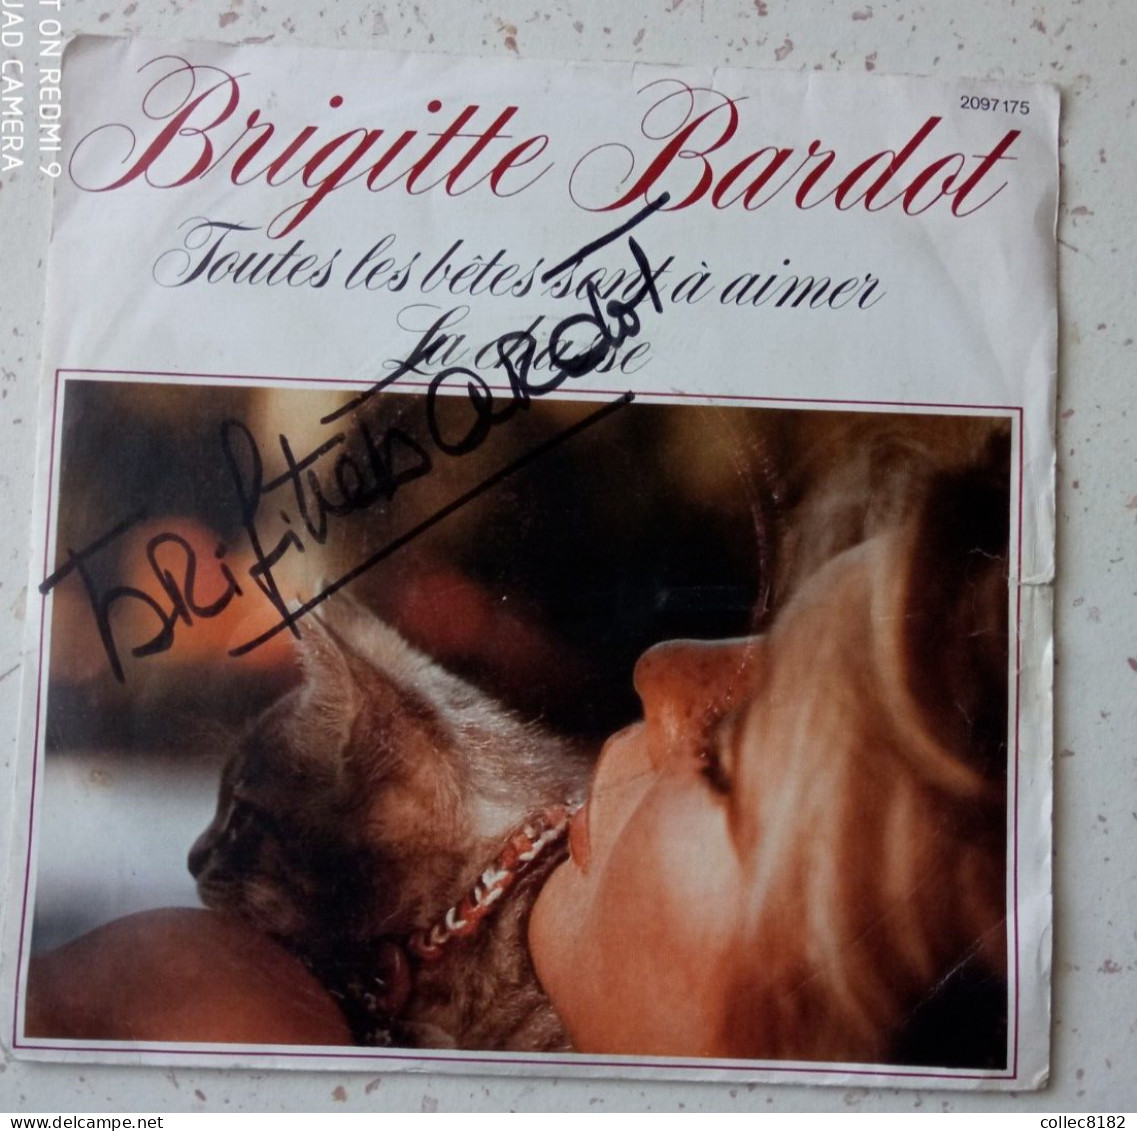 Autographe Original De Brigitte Bardot Sur 45 Tr Toutes Les Bêtes Sont à Aimer Port Offert France - Ediciones De Colección